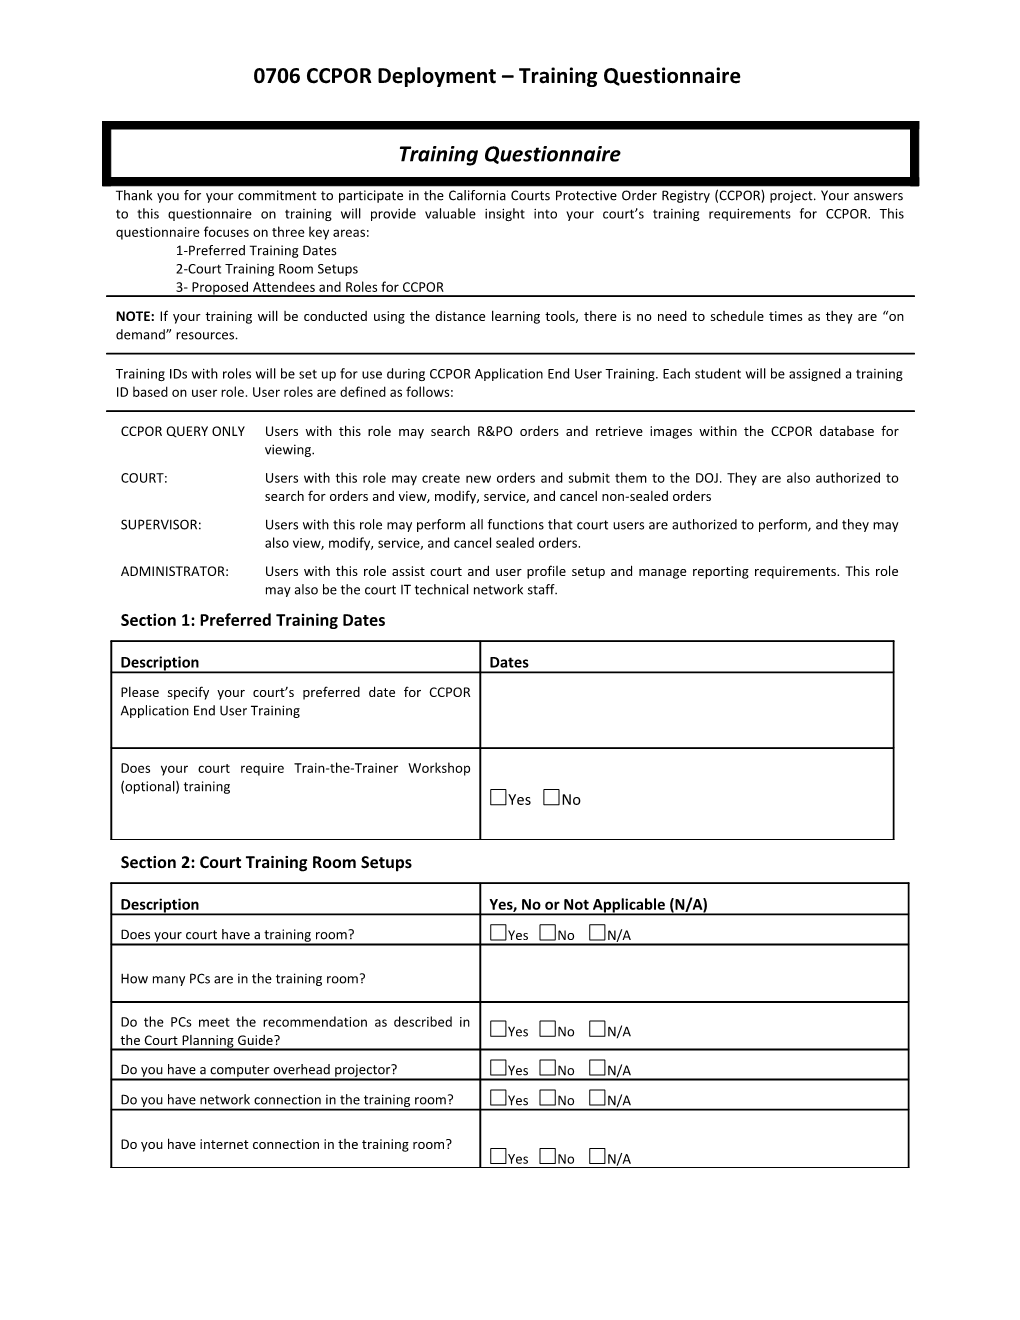 0706 CCPOR Deployment Training Questionnaire